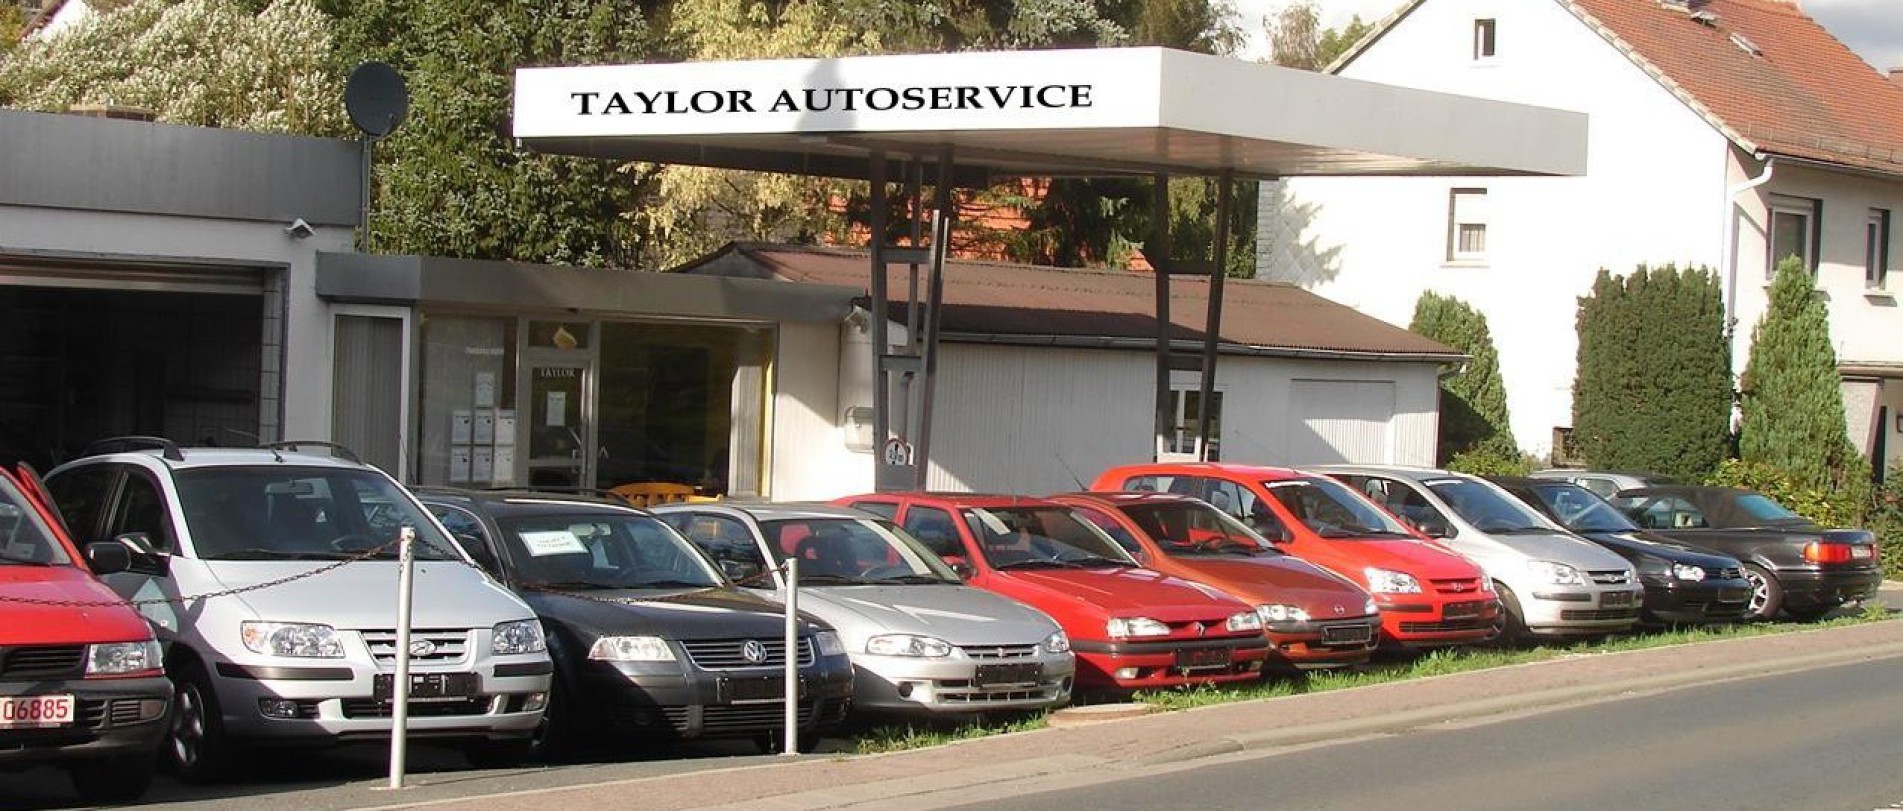 Taylor-Autoservice, Ihr Autohändler im Taunus - Gebrauchtwagenhandel